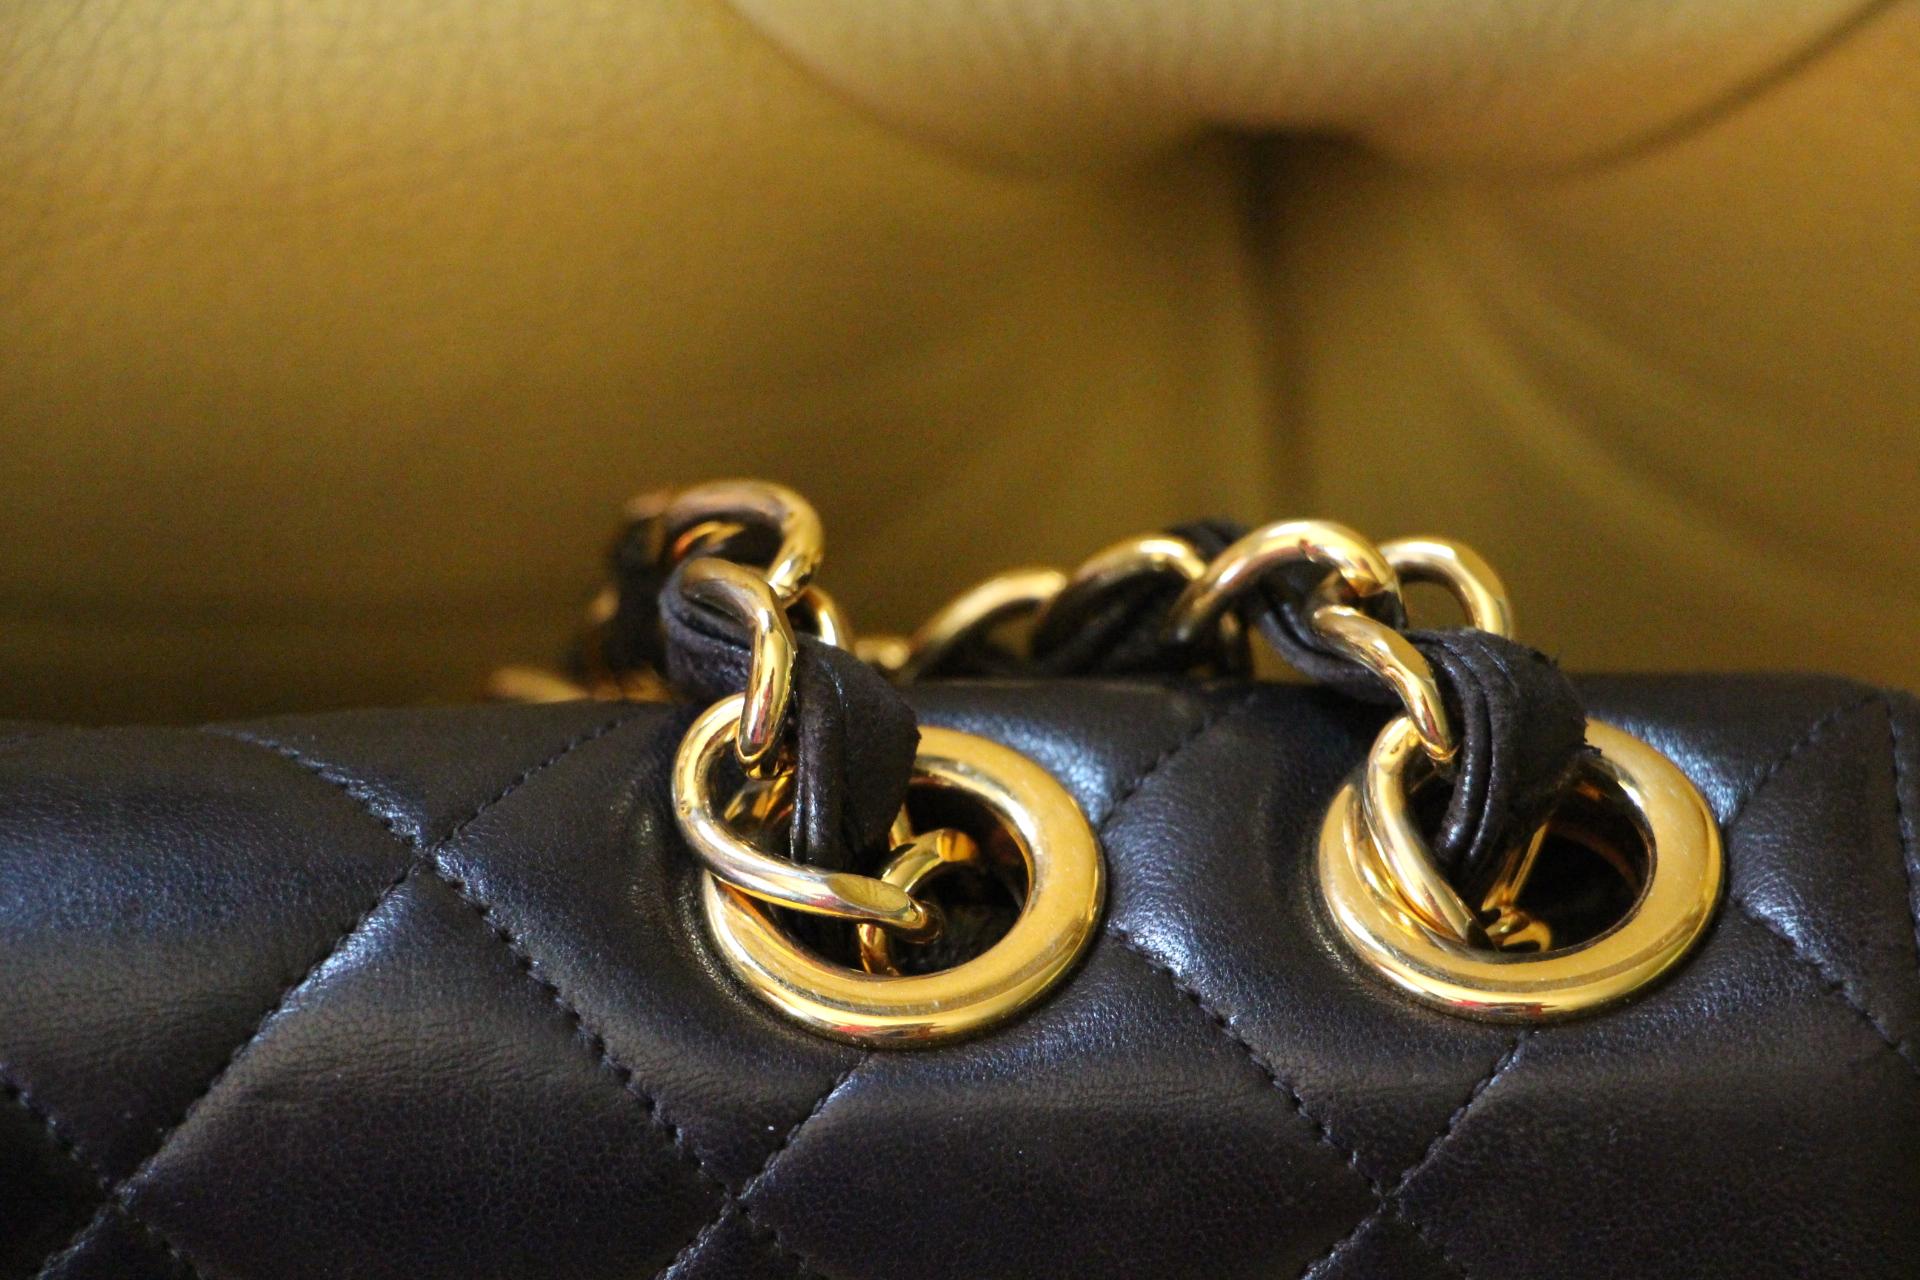 Women's Chanel Jumbo Flap Bag In Black Lambskin